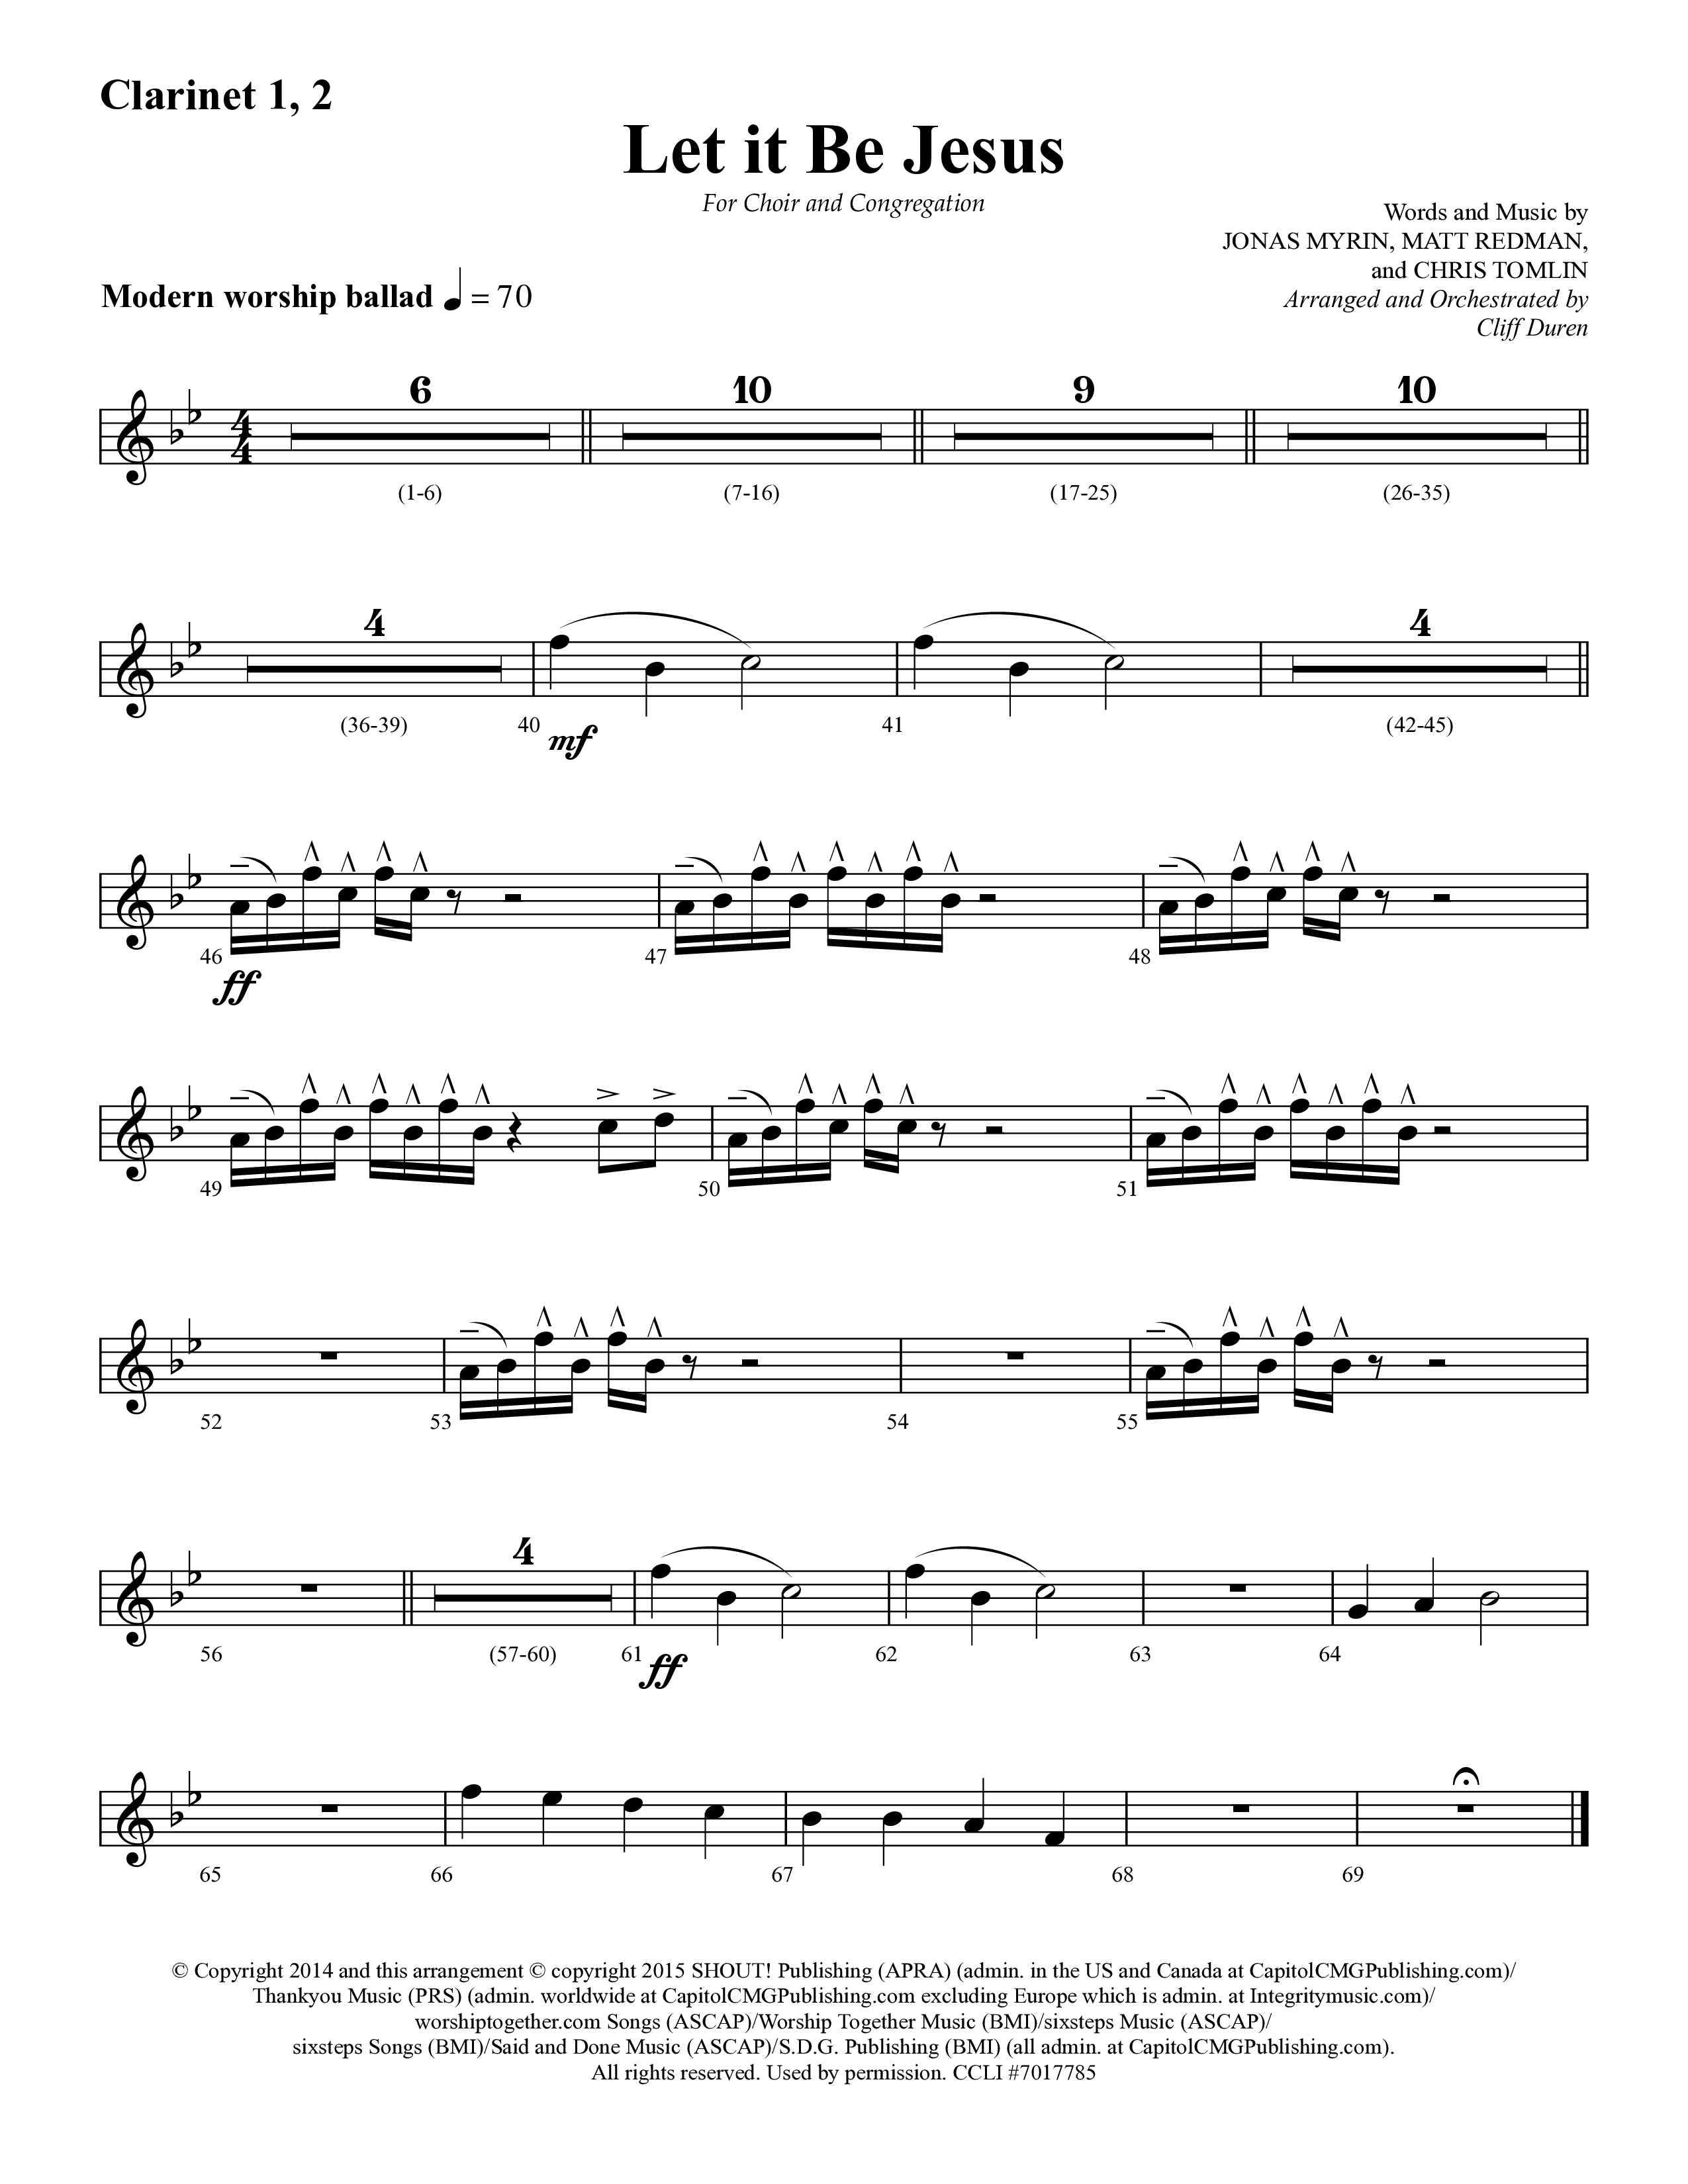 Let It Be Jesus (Choral Anthem SATB) Clarinet 1/2 (Lifeway Choral / Arr. Cliff Duren)